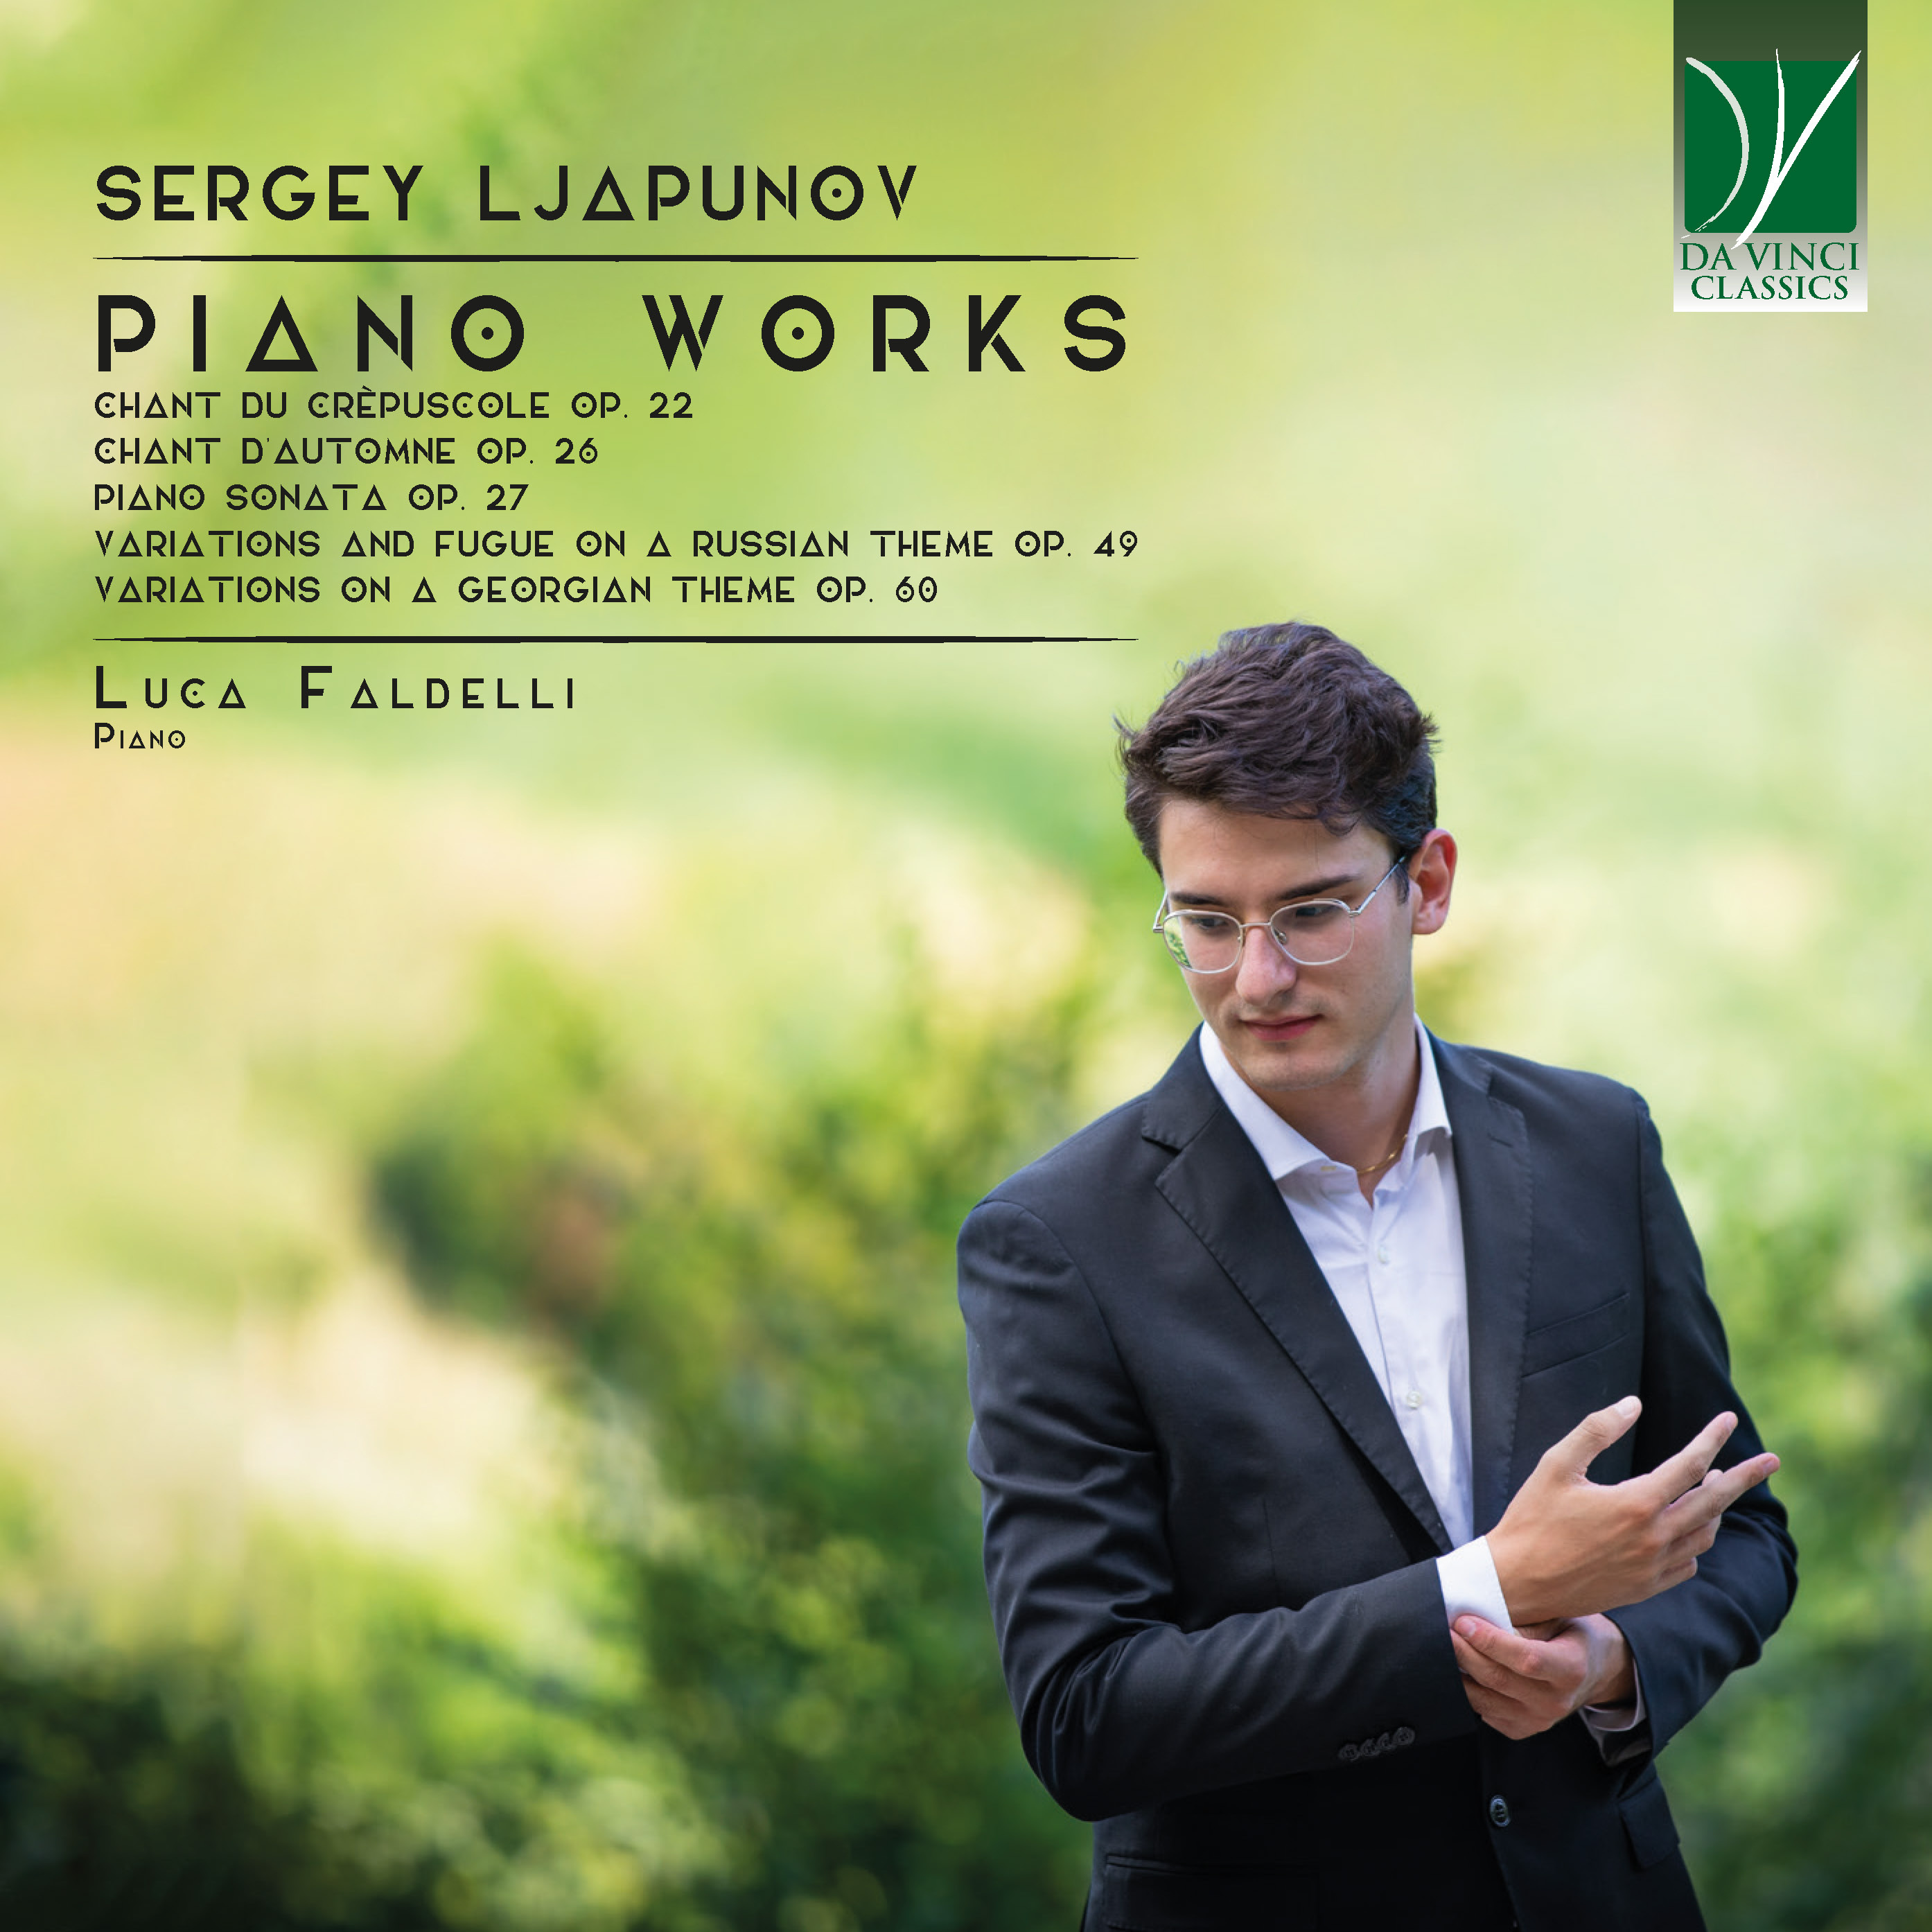 SERGEY LJAPUNOV: PIANO WORKS